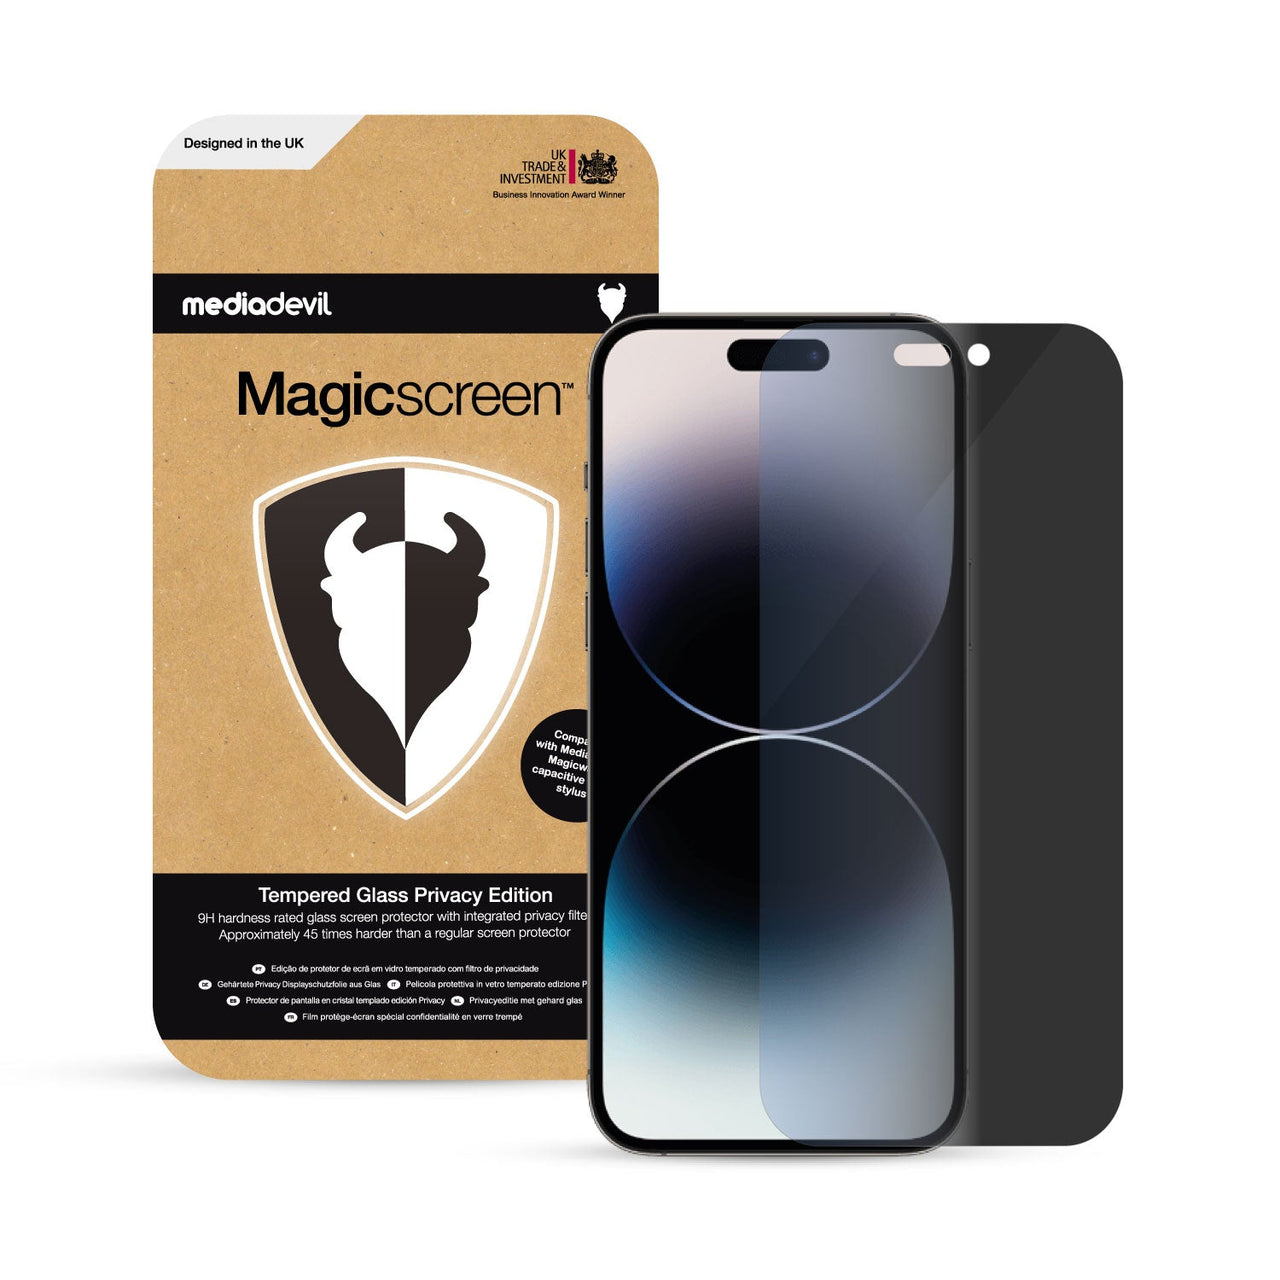 iPhone 15 Pro Max - Vidrio Templado Mate - 20K Premium – MoviSmart